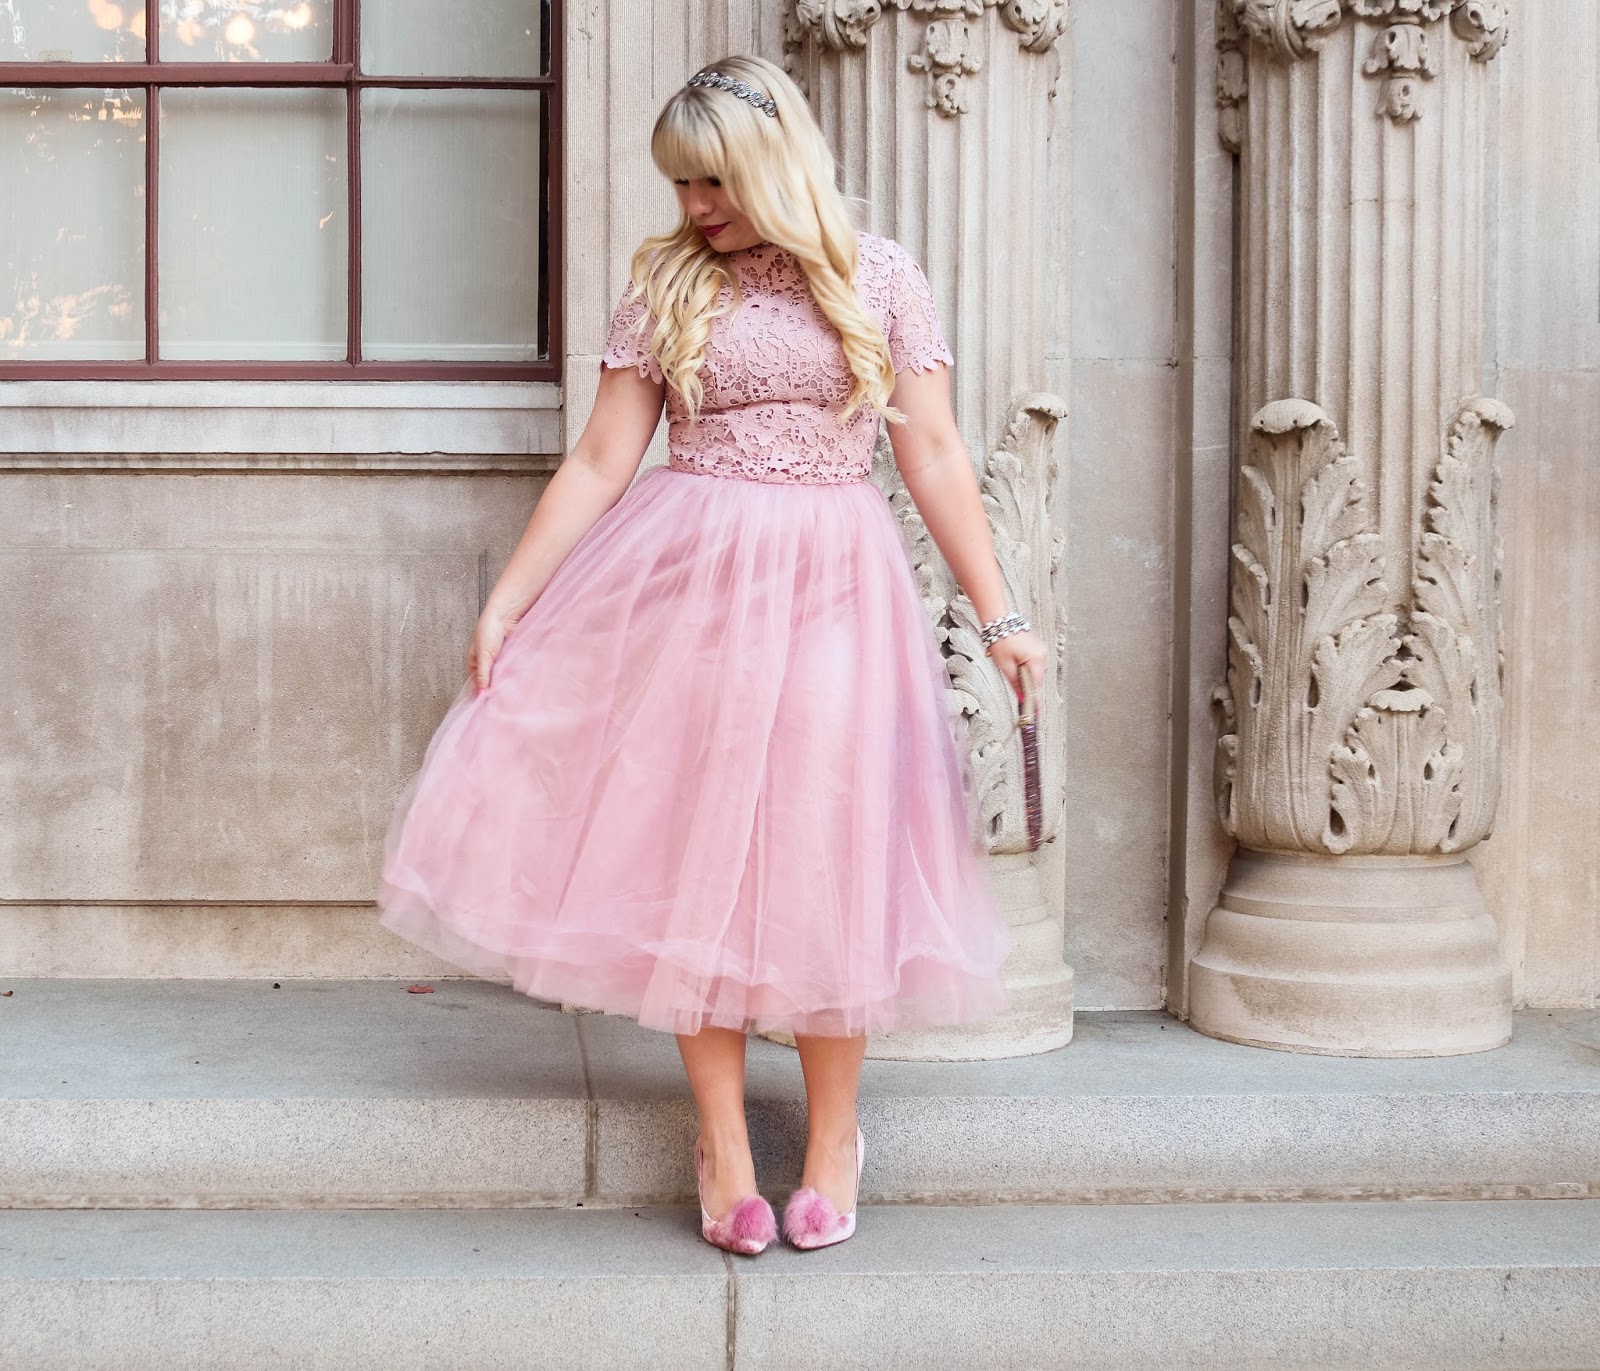 The Prettiest Pink Princess Dress